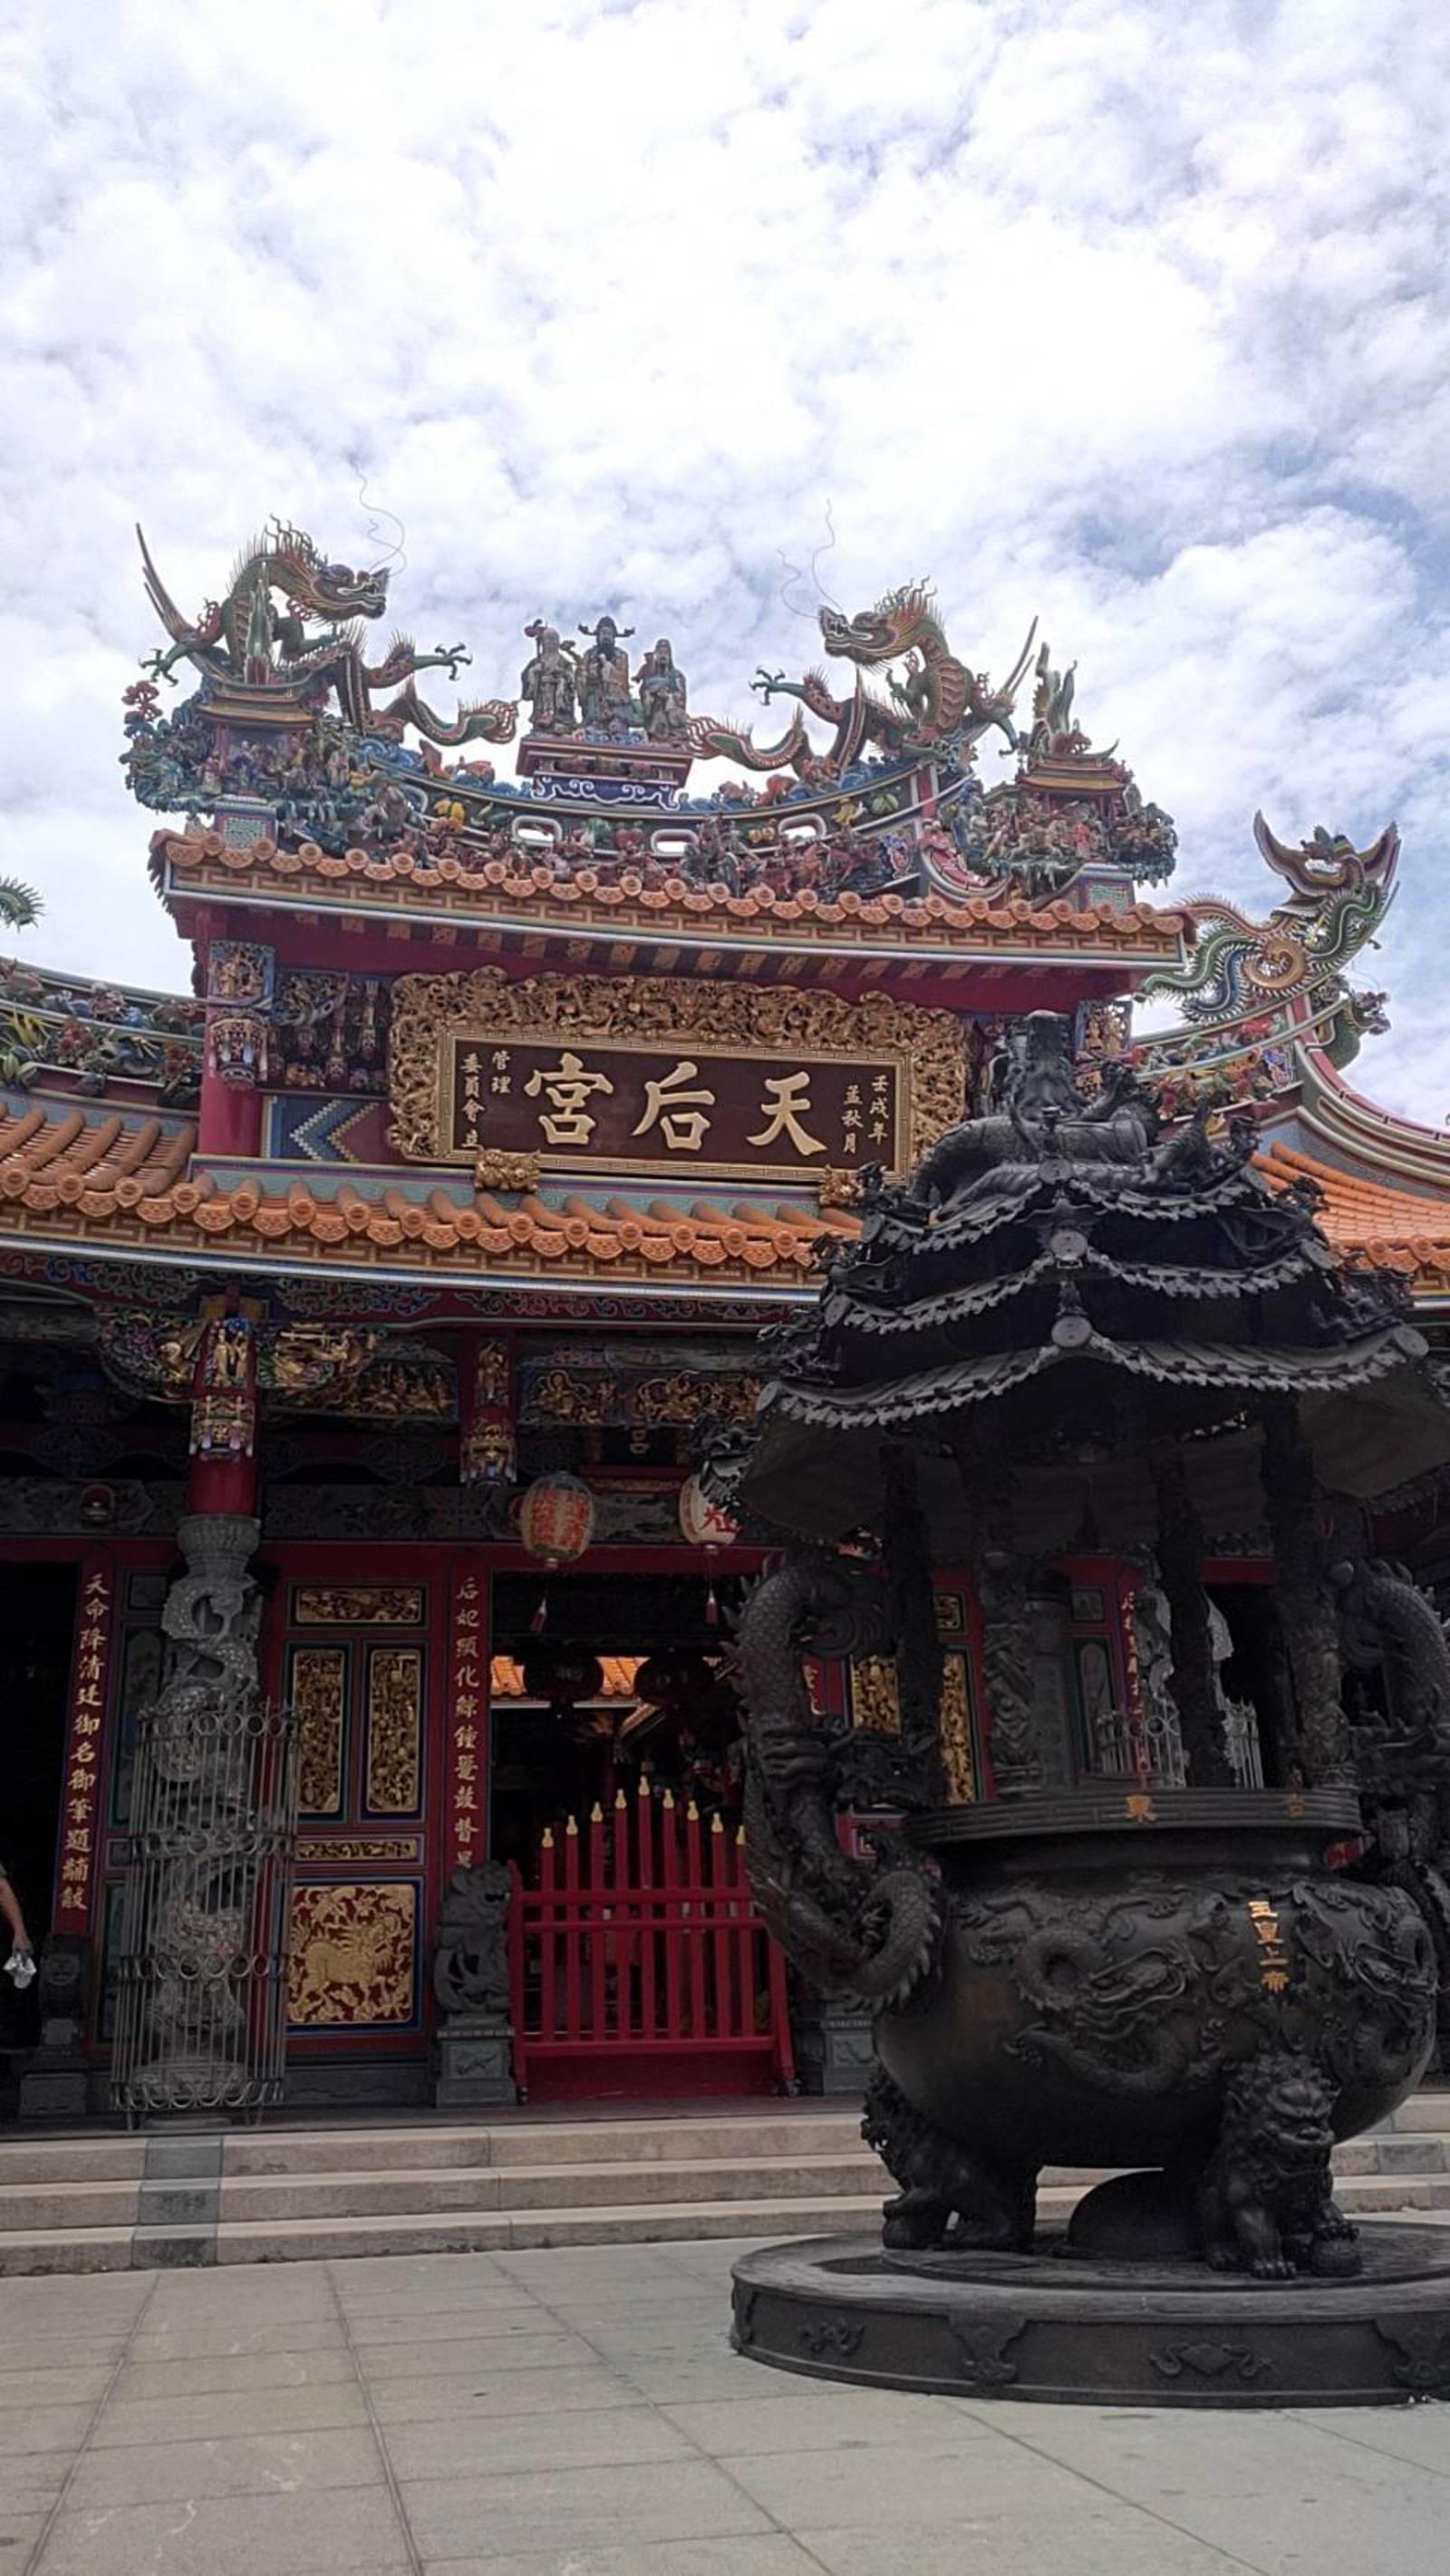 為什麼台灣有這麼多媽祖廟?